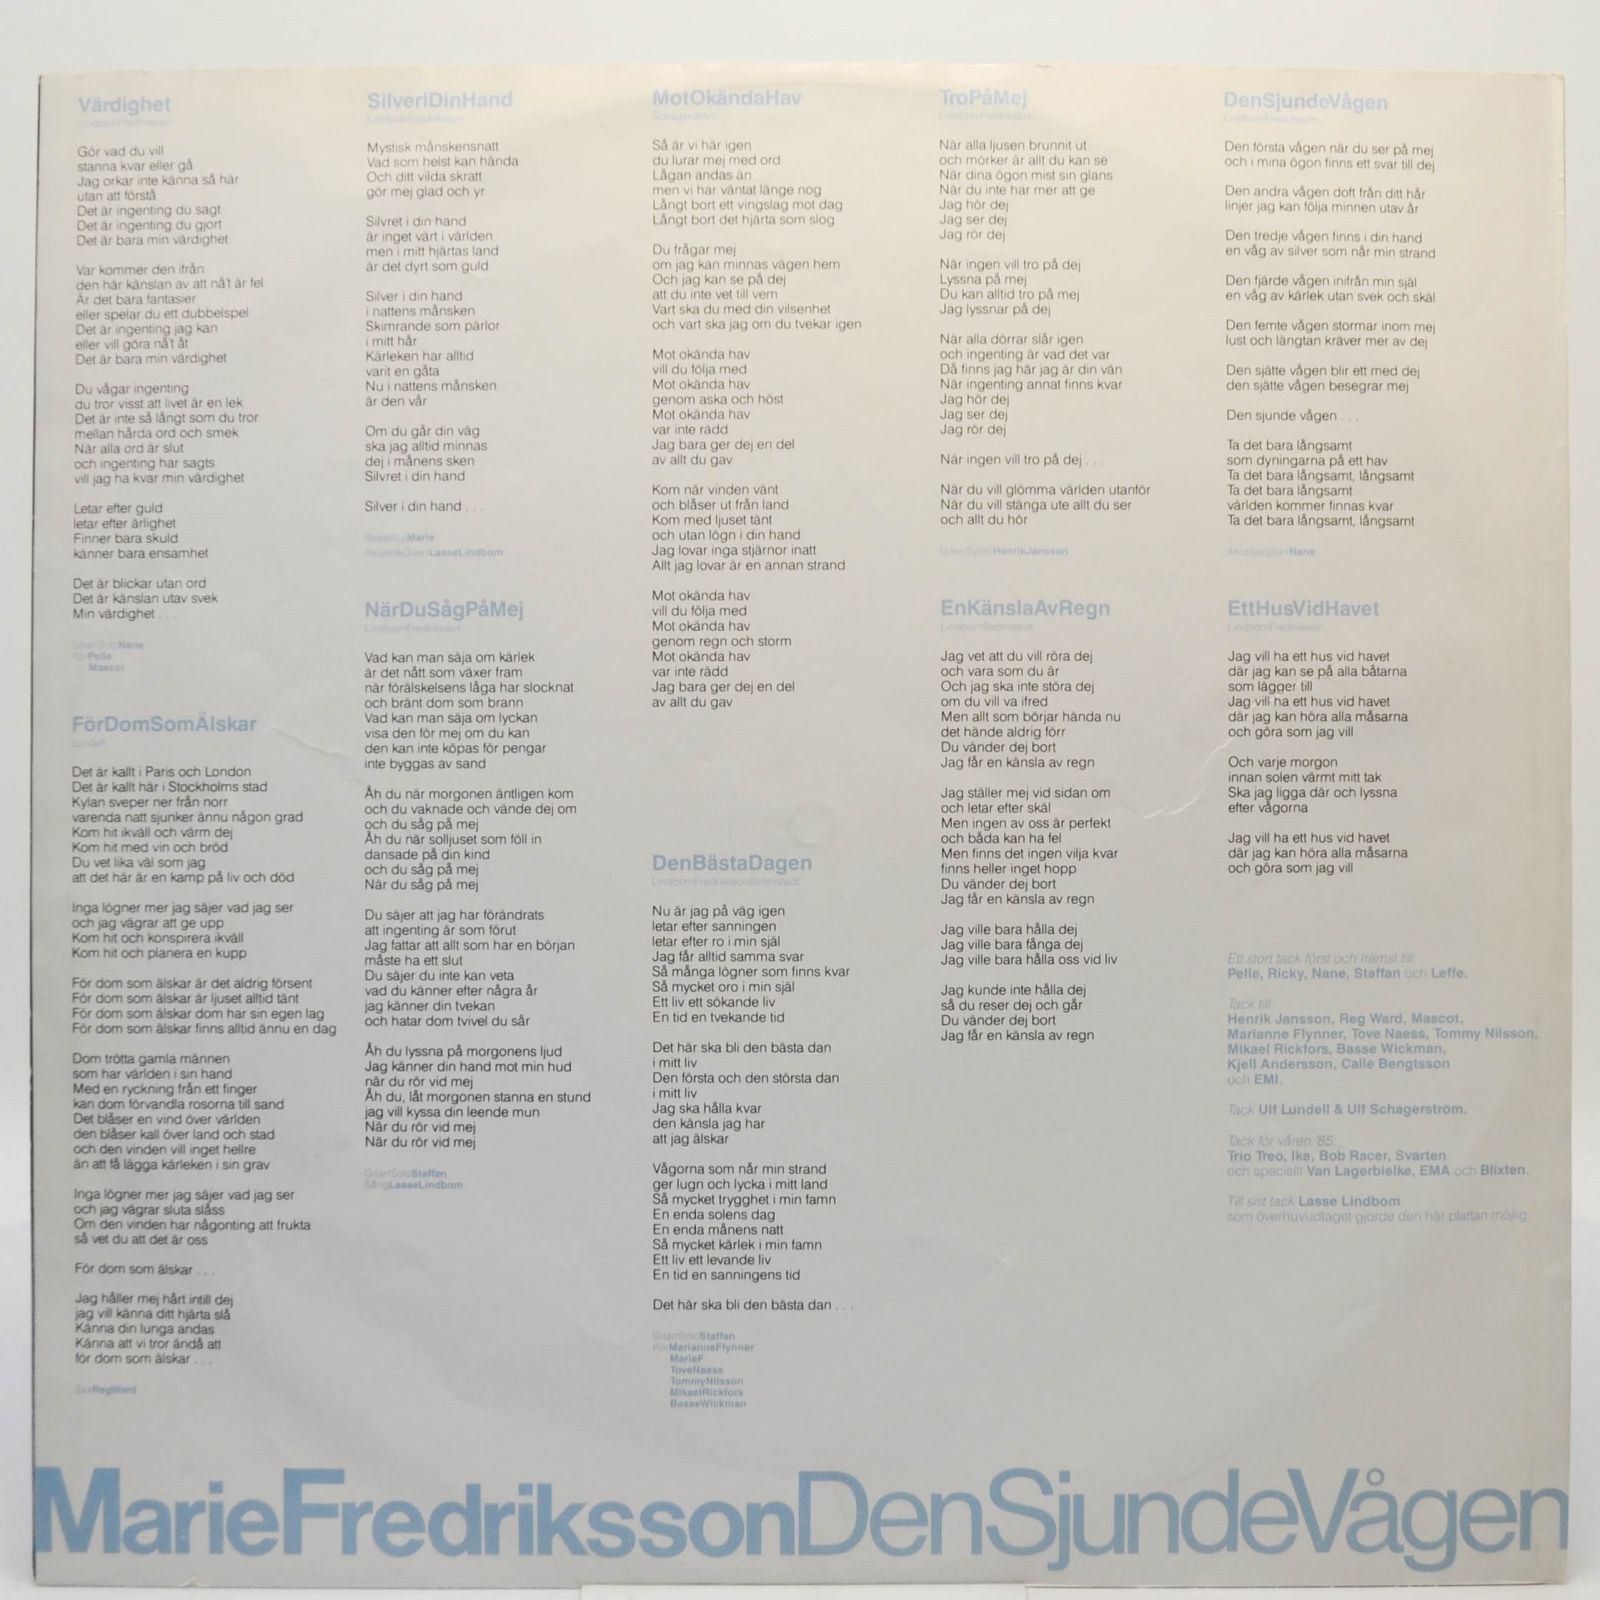 Marie Fredriksson — Den Sjunde Vågen (1-st, Sweden), 1986